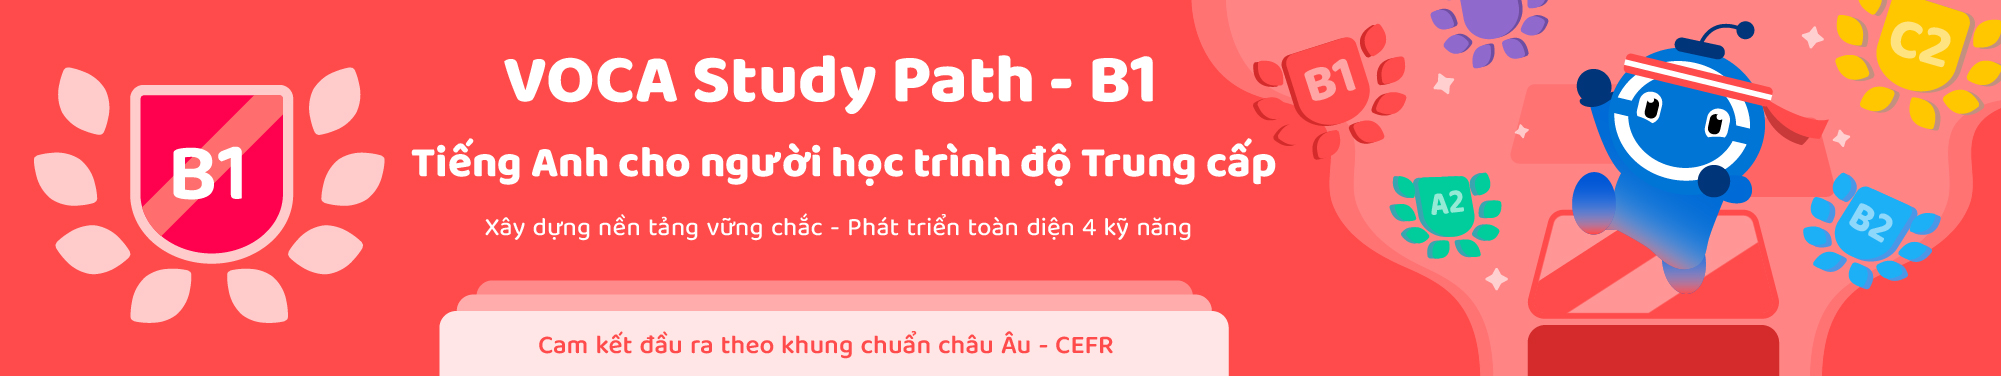 VOCA Study Path (CEFR) - Level B1 banner